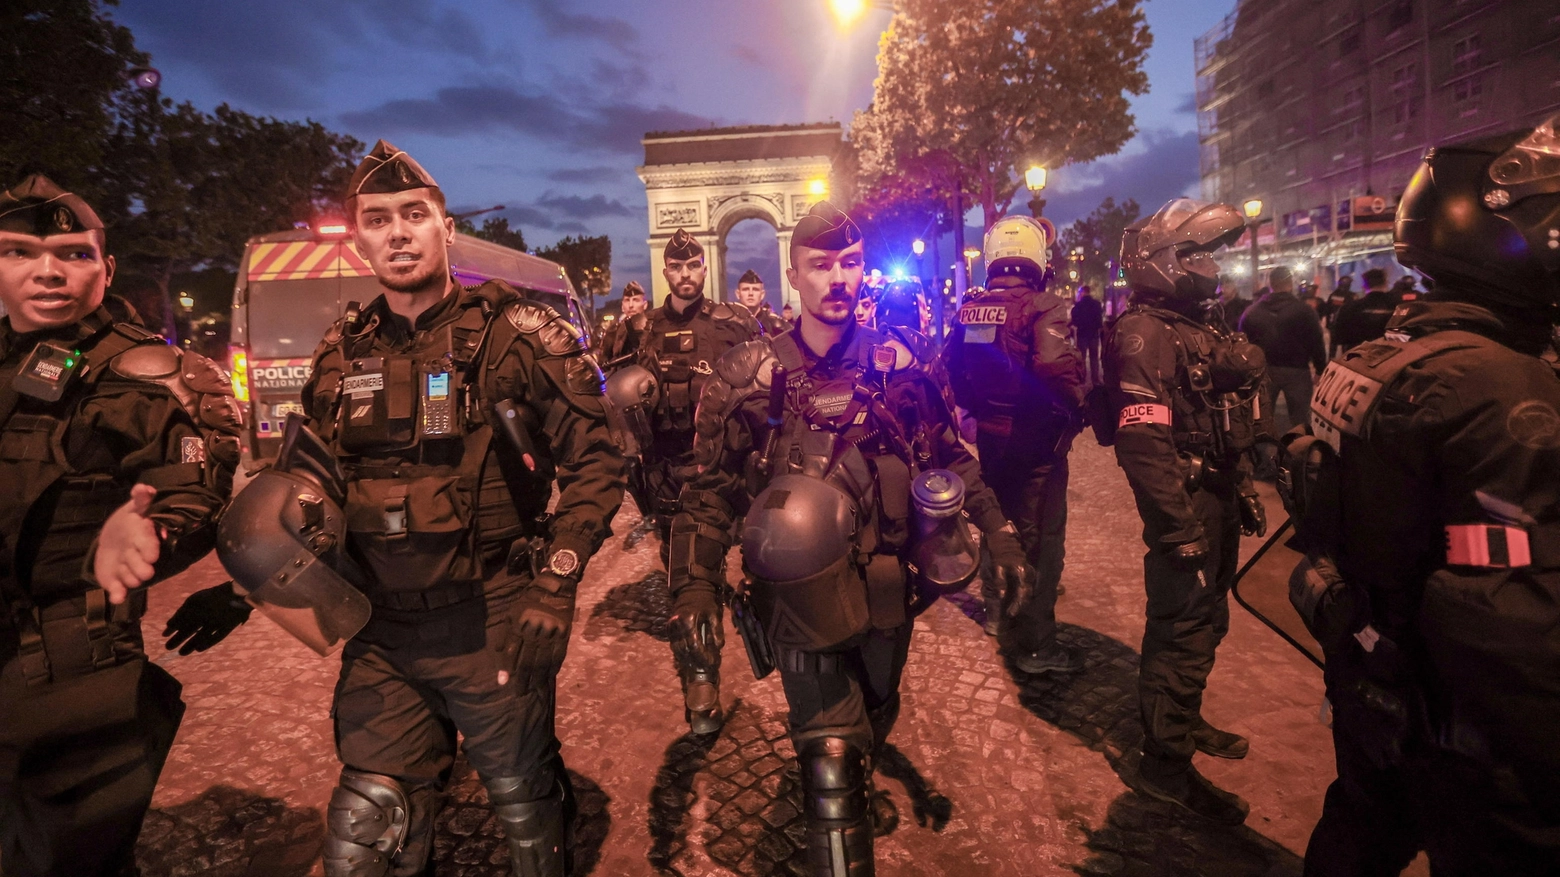 L’analisi sulla situazione nelle periferie e la ghettizzazione delle minoranze: "C’è un rapporto conflittuale con la polizia I francesi spaventati voteranno a destra, funziona l’elemento identitario"